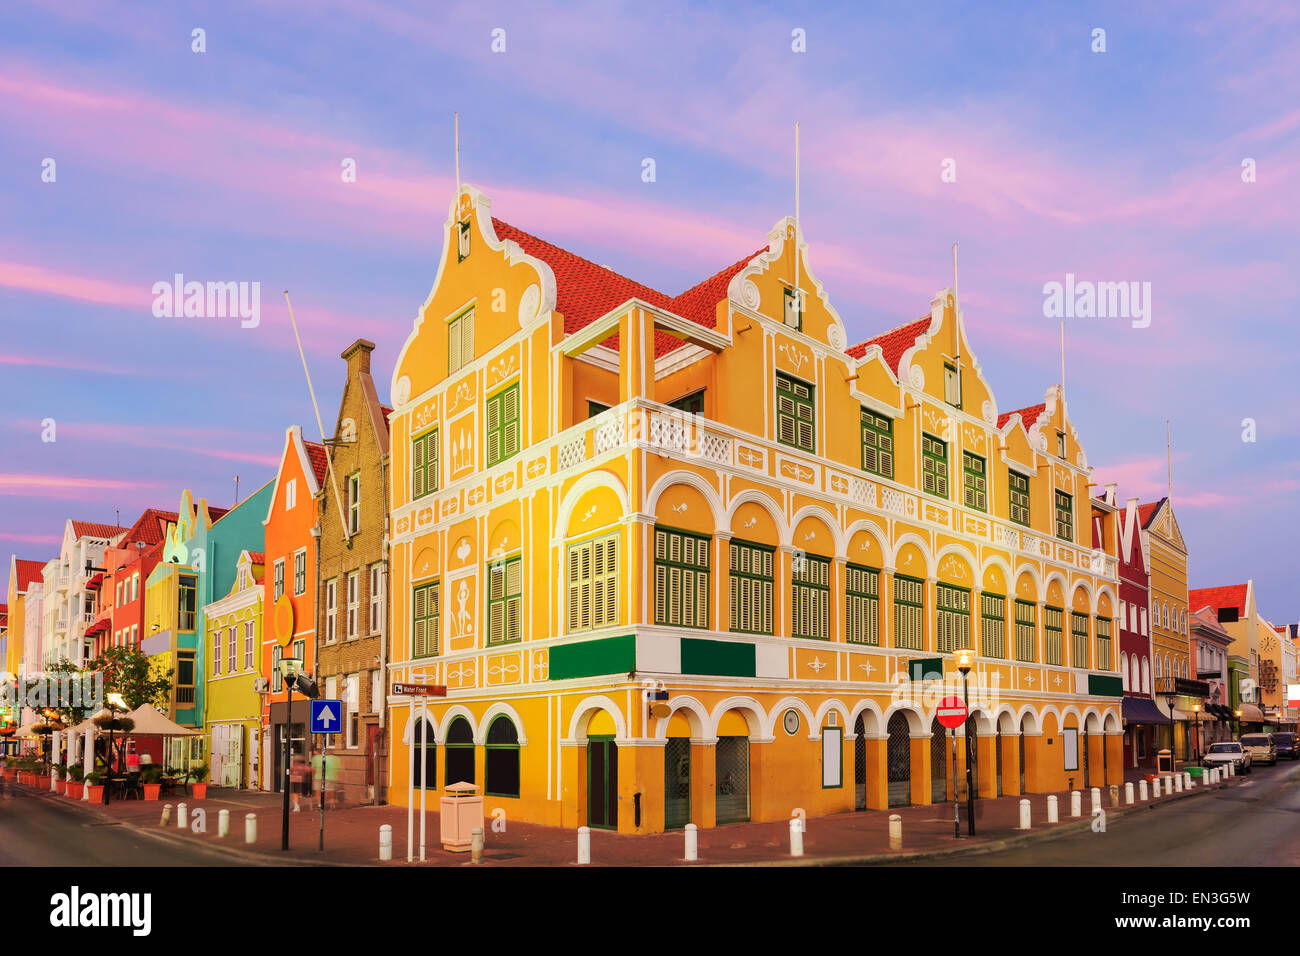 Le centre-ville de Willemstad au crépuscule, Curacao, Antilles néerlandaises Banque D'Images